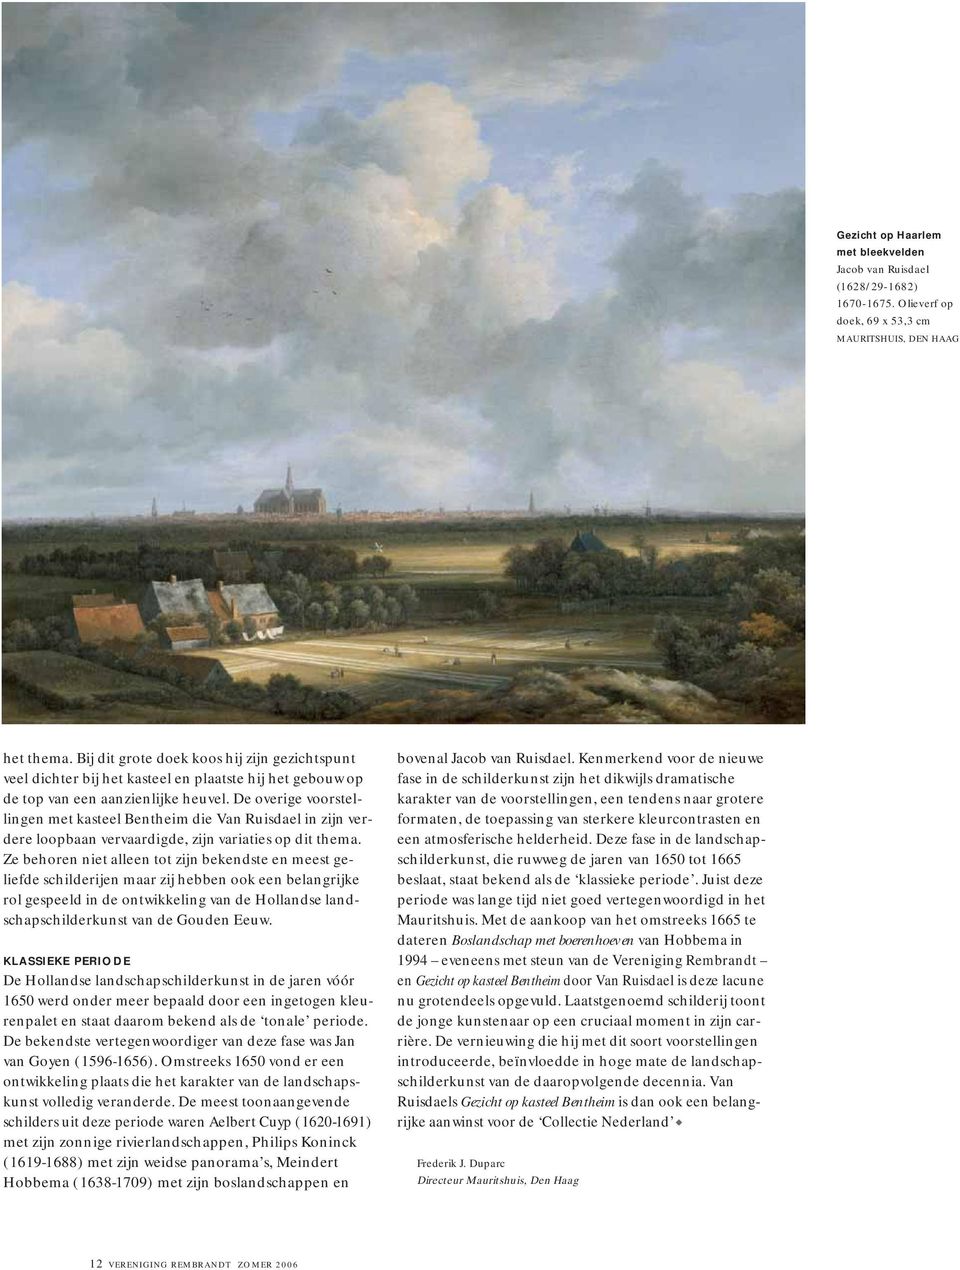 De overige voorstellingen met kasteel Bentheim die Van Ruisdael in zijn verdere loopbaan vervaardigde, zijn variaties op dit thema.